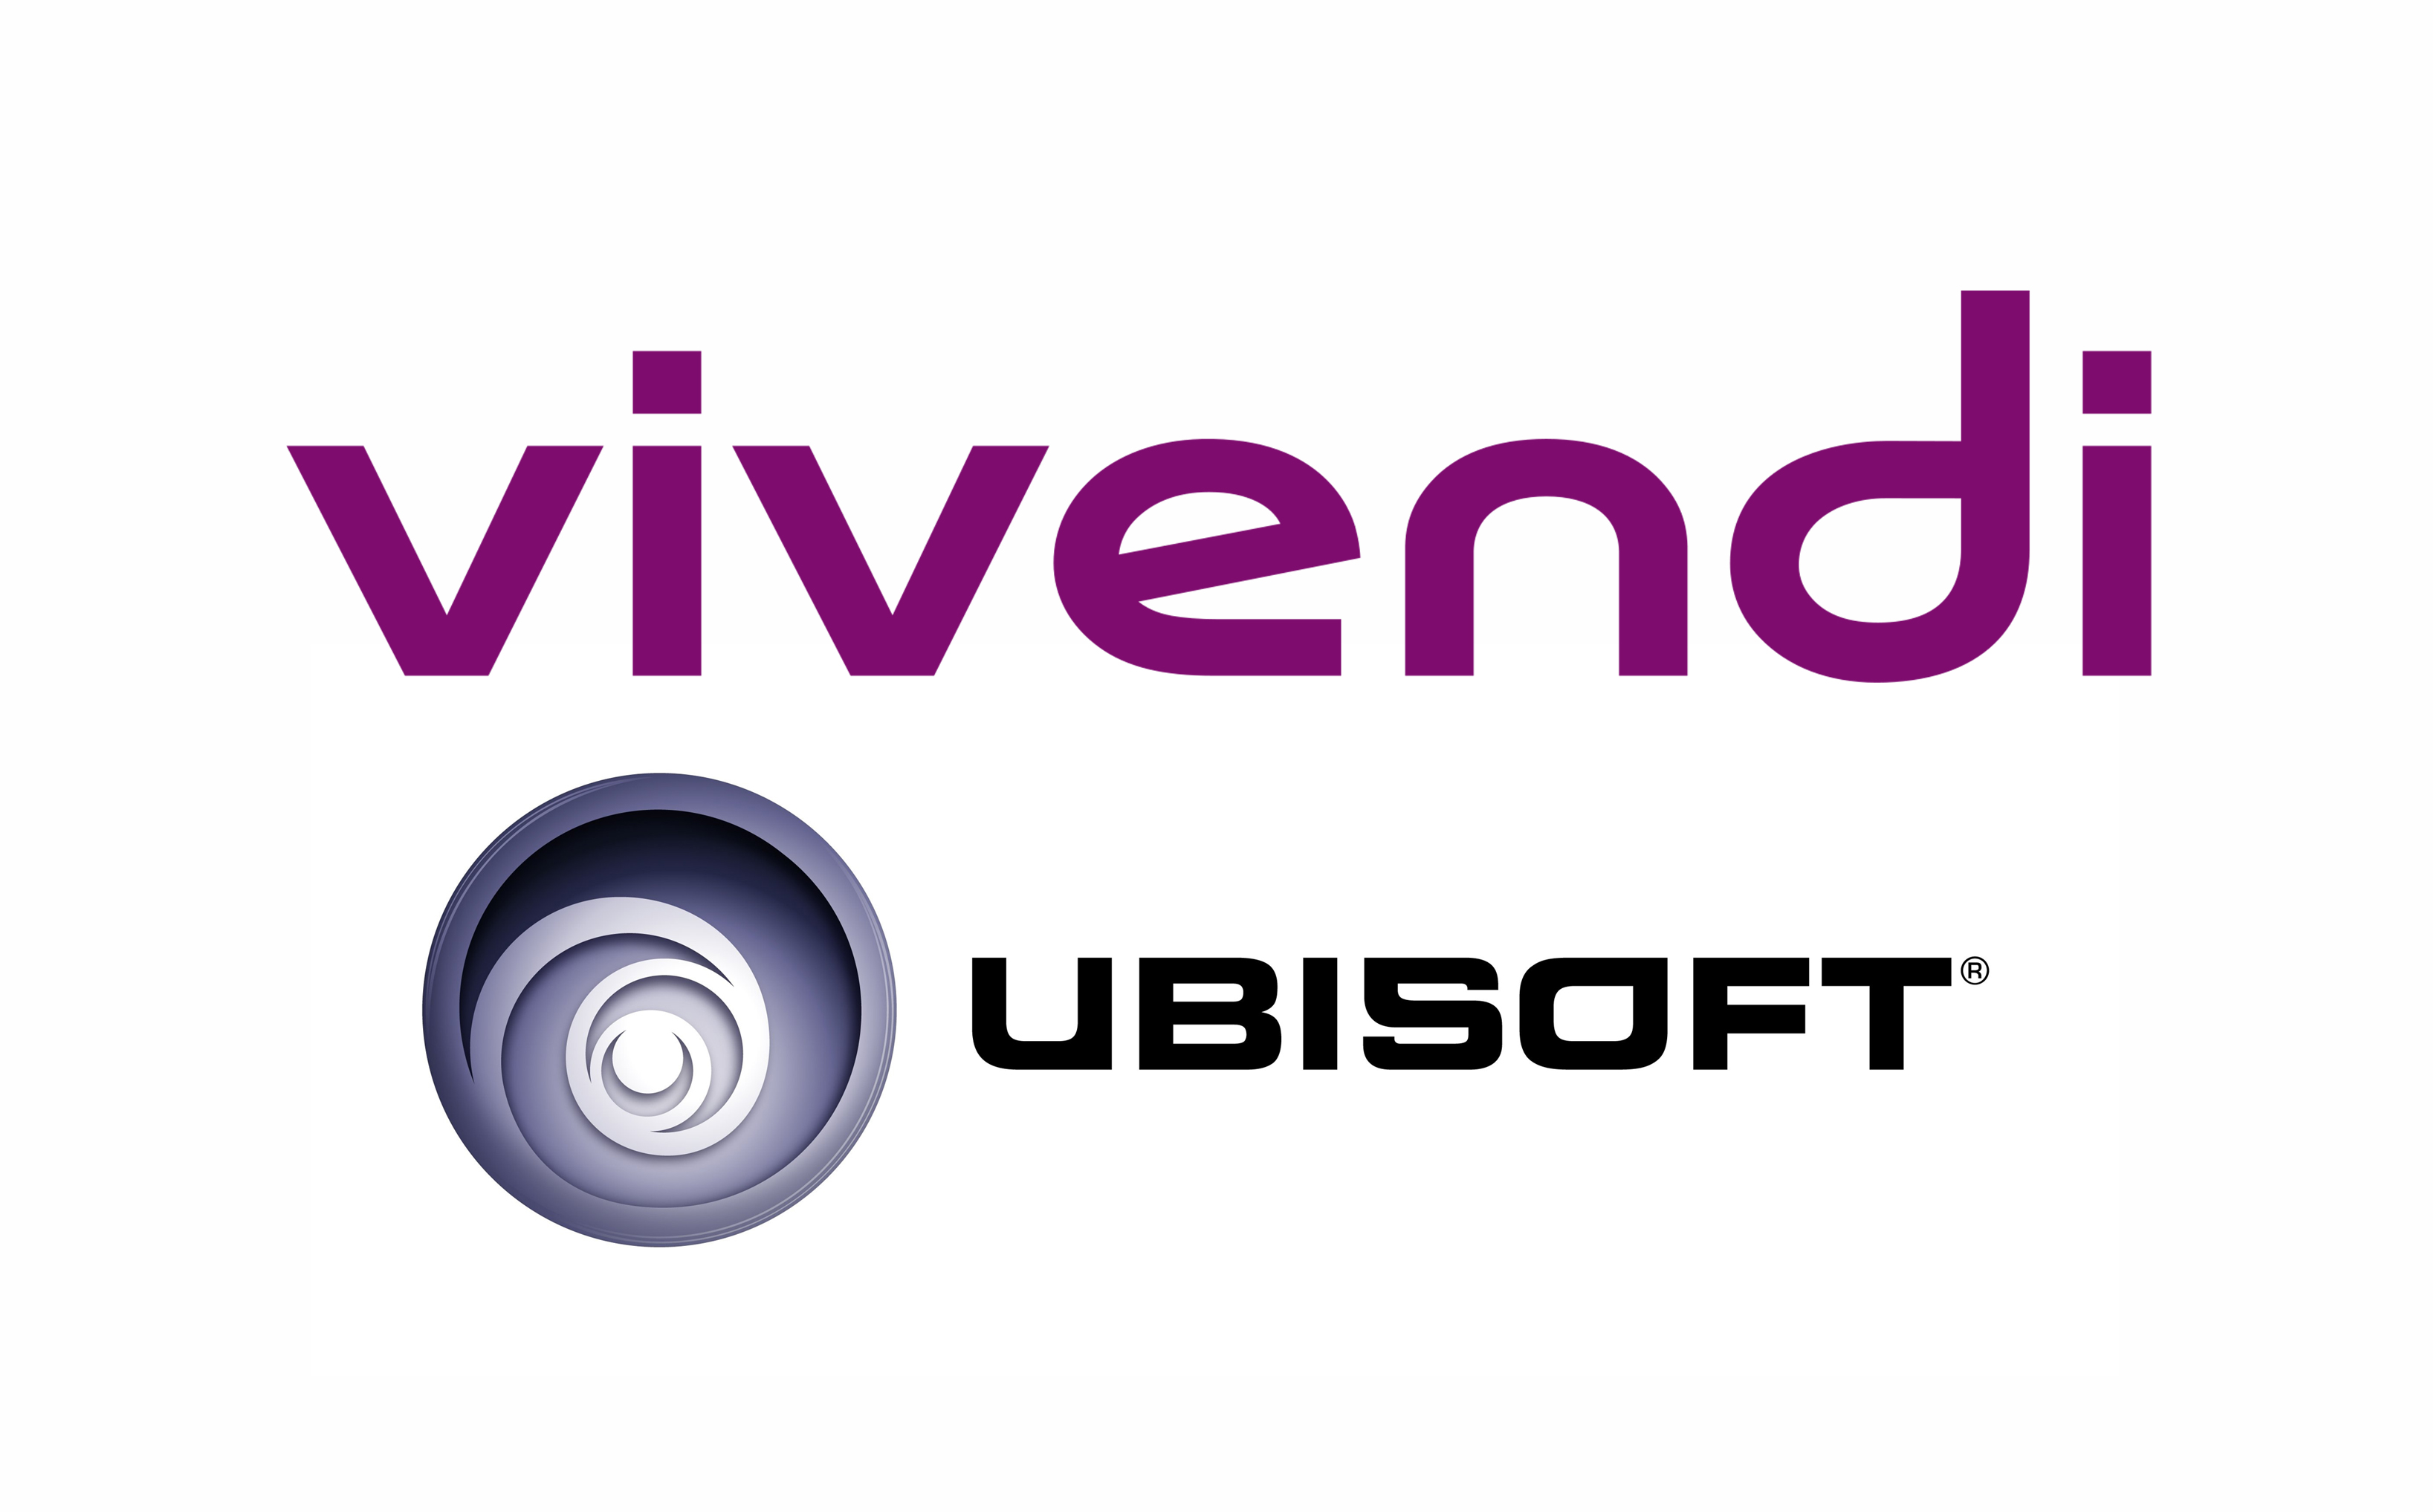 Affaire Ubisoft / Vivendi : une victoire temporaire pour Ubisoft